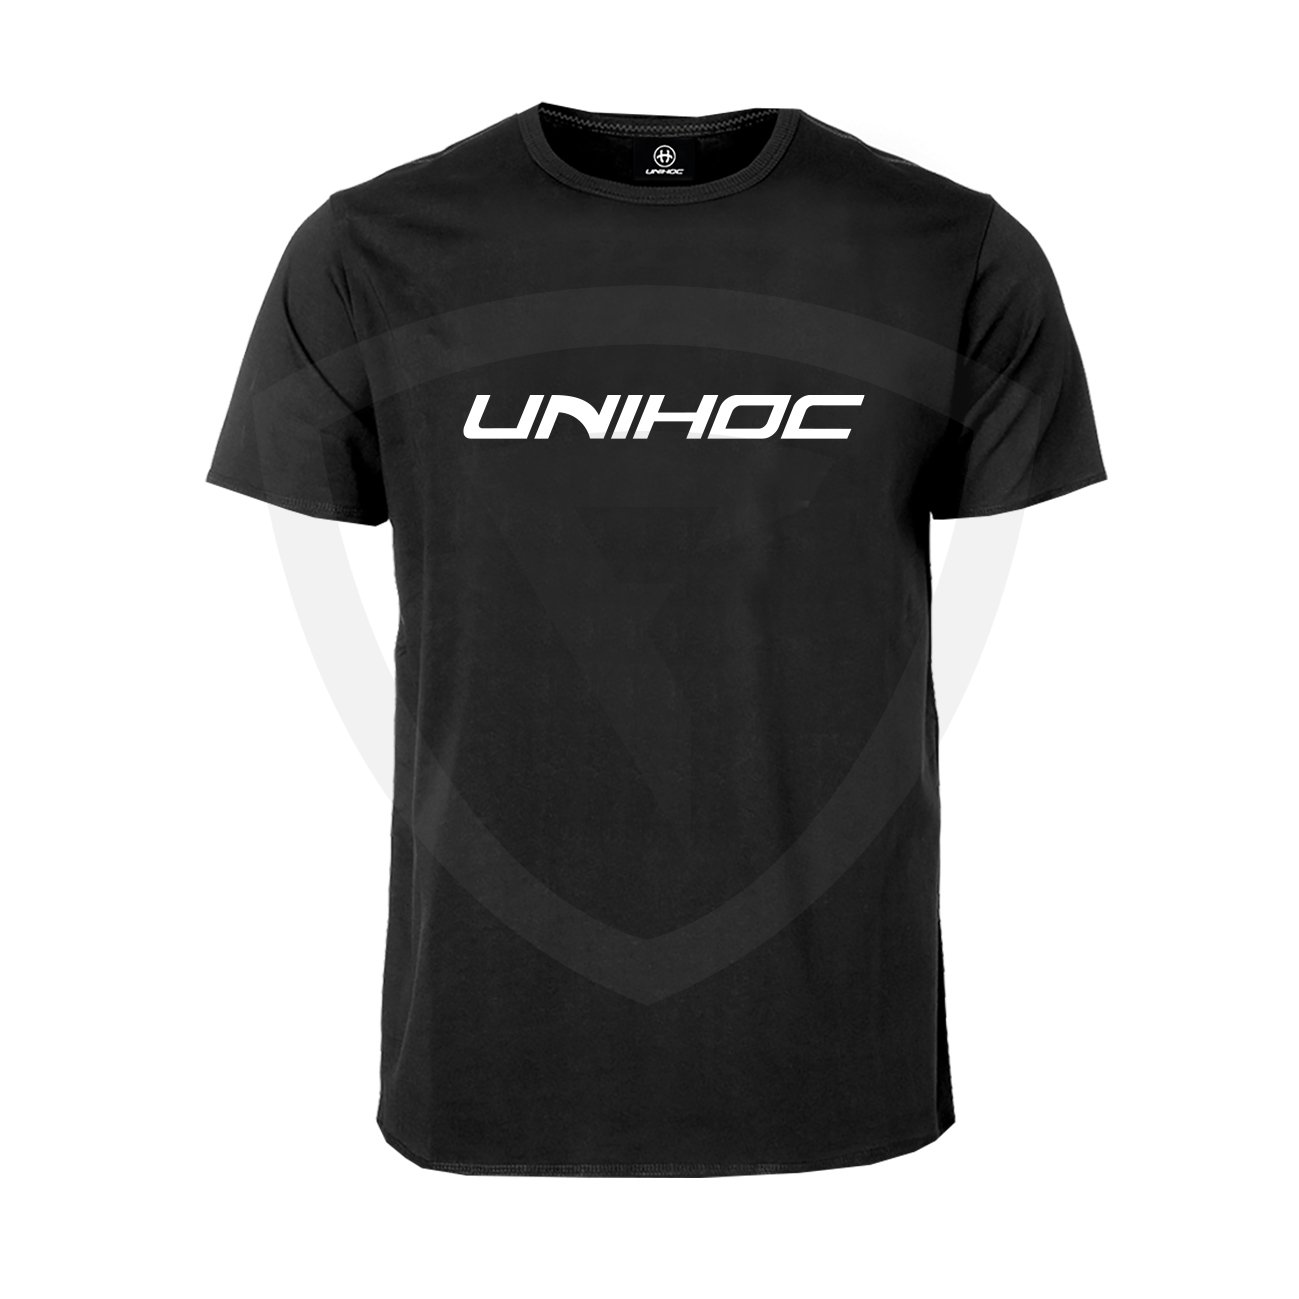 Unihoc T-shirt Classic Black SR S černá